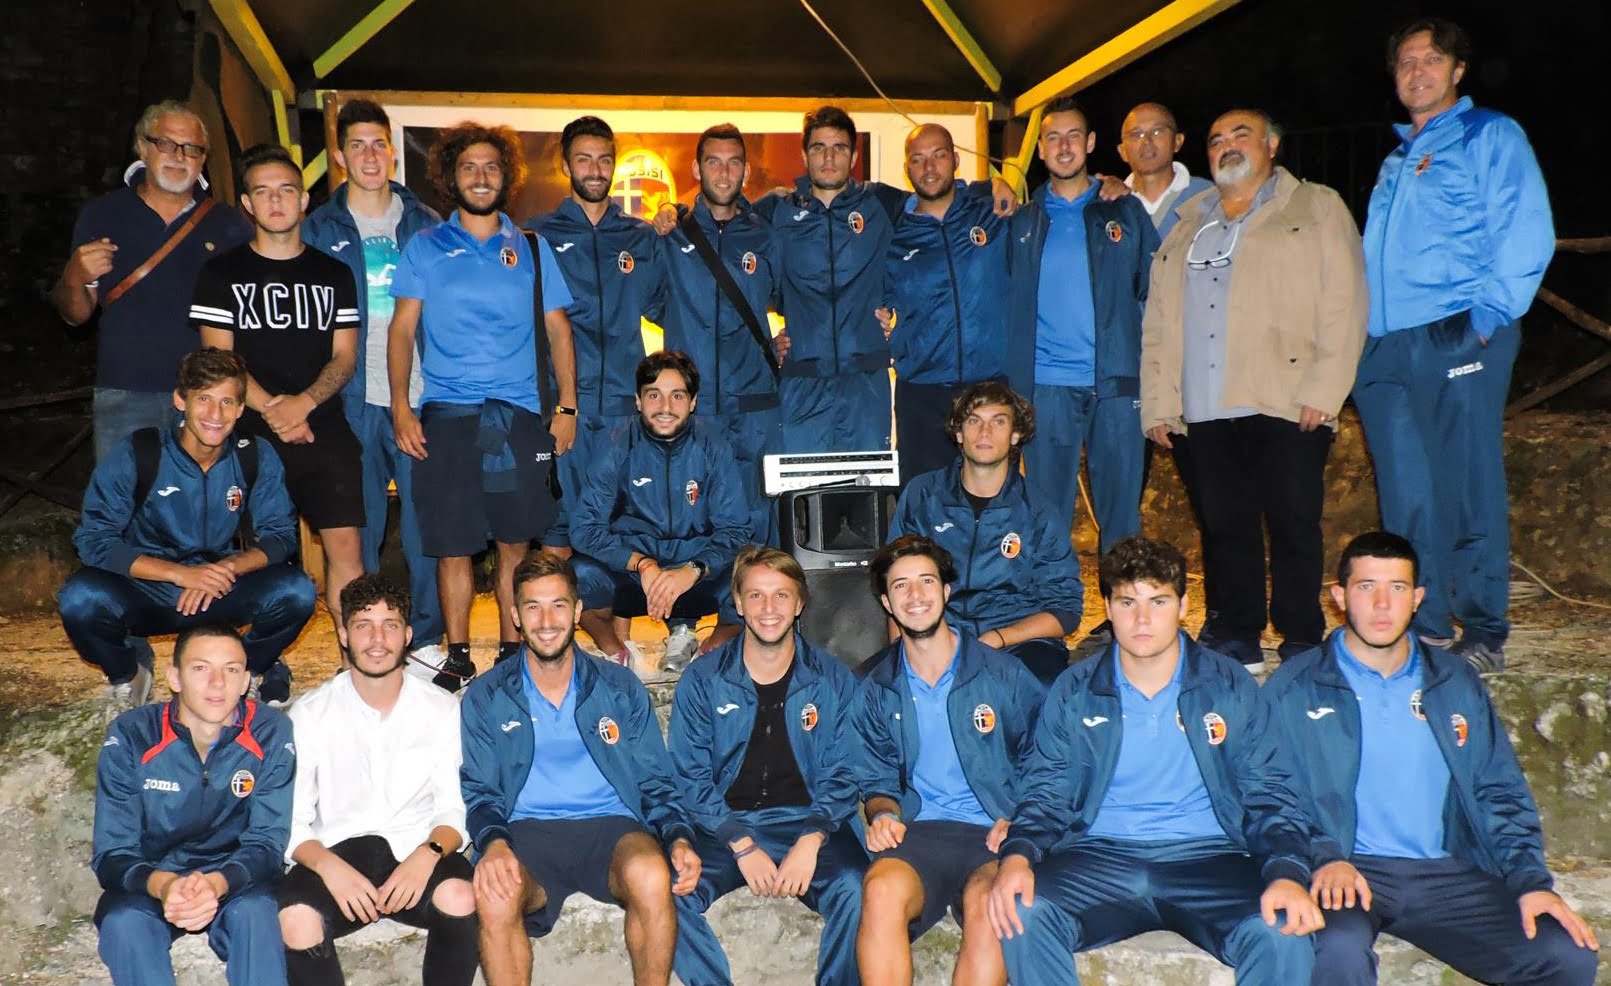 Calcio: presentata l'Assisi, che ha debuttato in campionato con una vittoria convincente